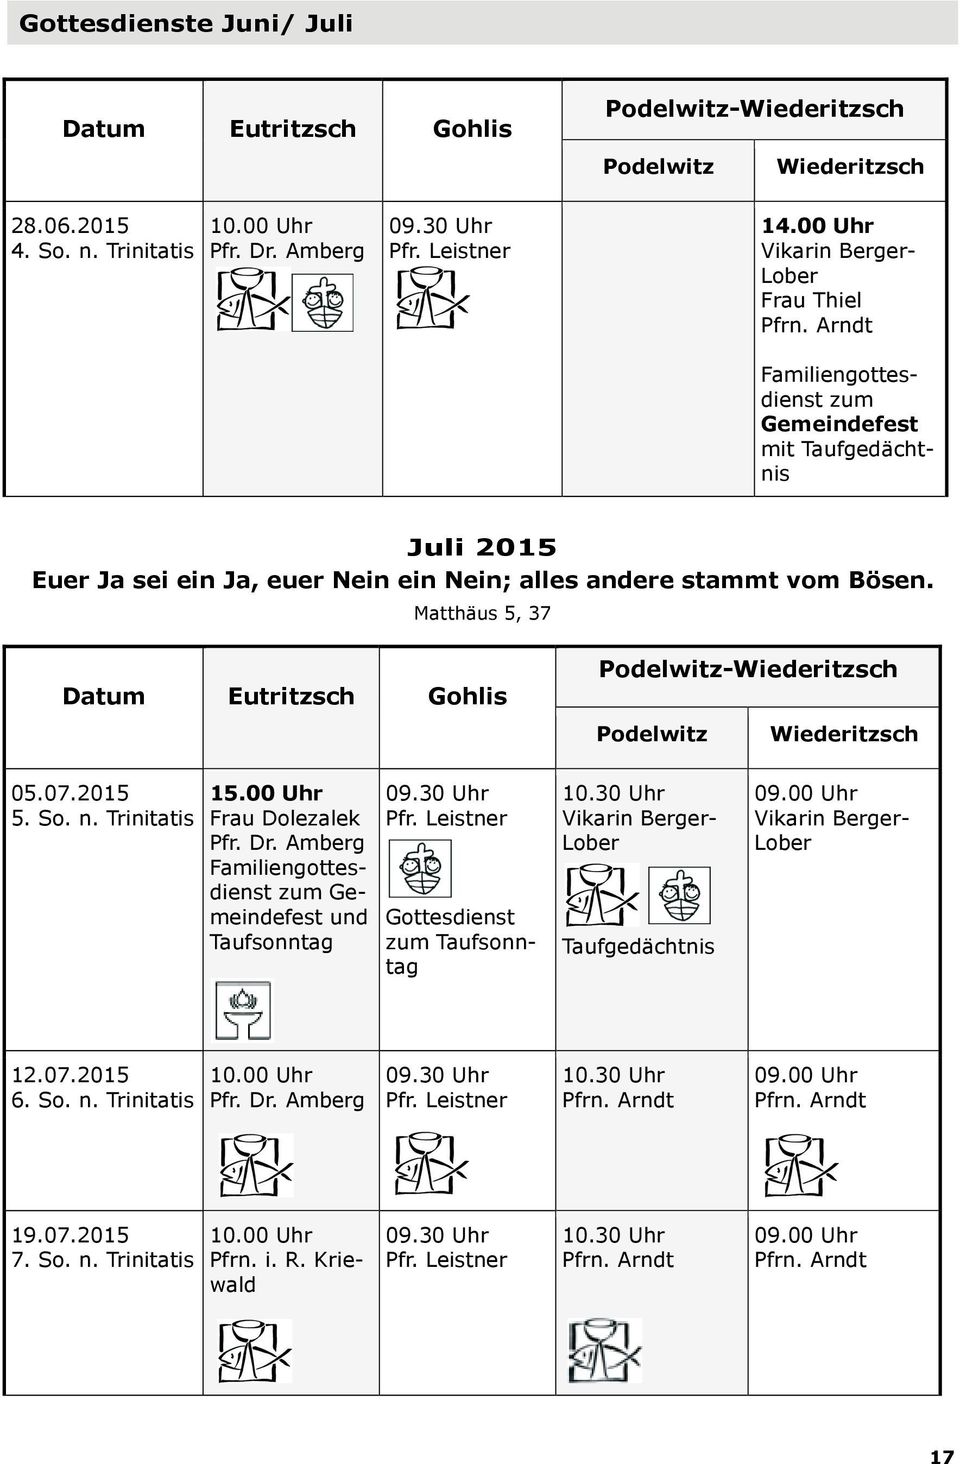 Matthäus 5, 37 Datum Eutritzsch Gohlis Podelwitz-Wiederitzsch Podelwitz Wiederitzsch 05.07.2015 5. So. n. Trinitatis 15.00 Uhr Frau Dolezalek Pfr. Dr.